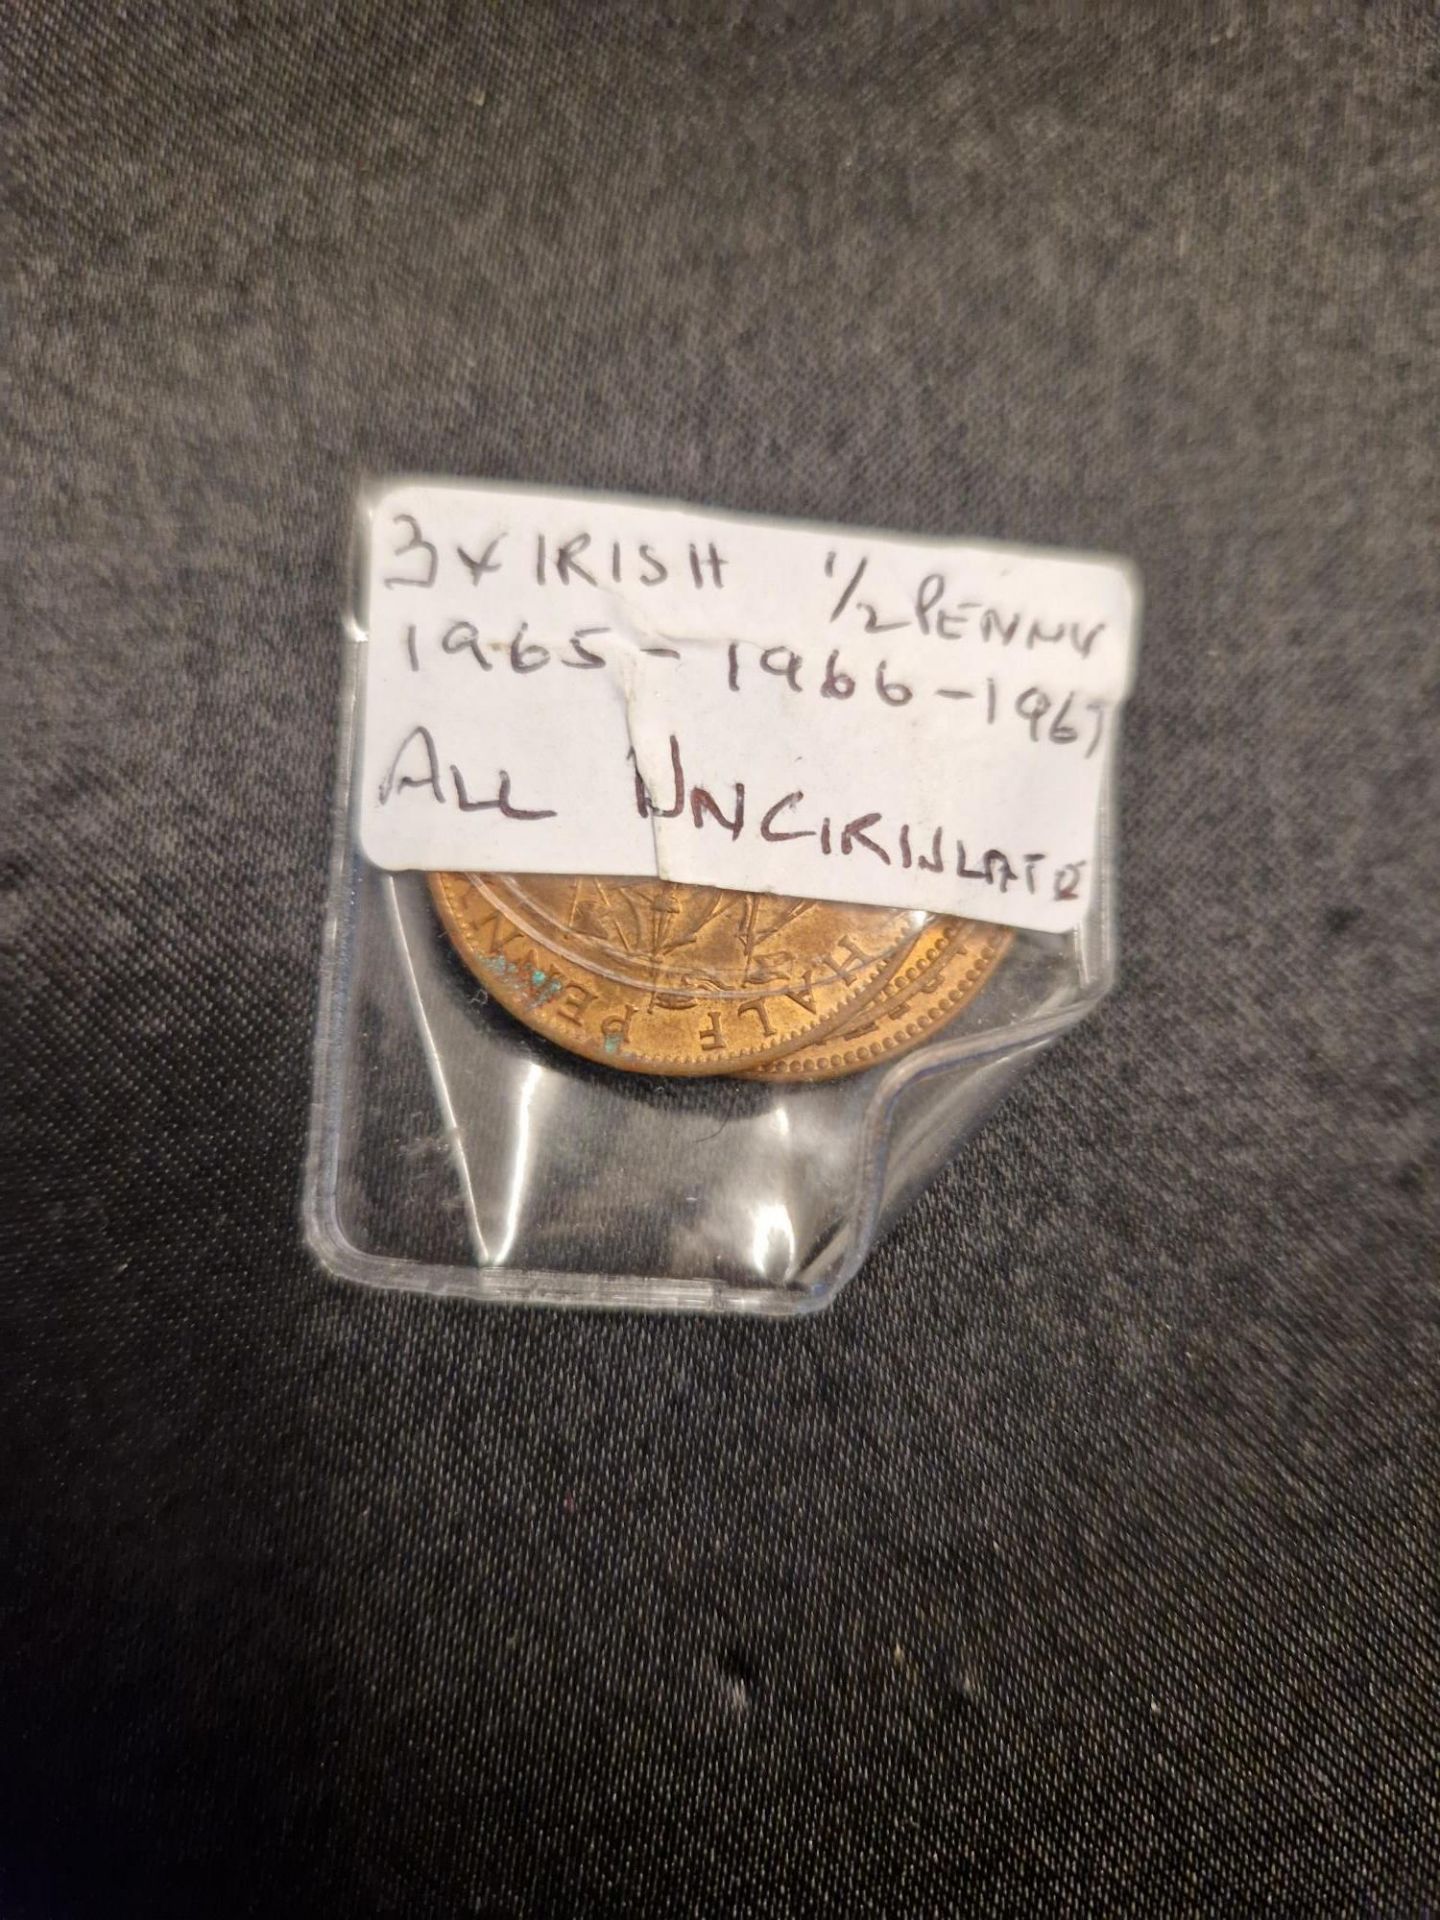 3 x irish half penny, 1965 - 66 - 67 uncirculated